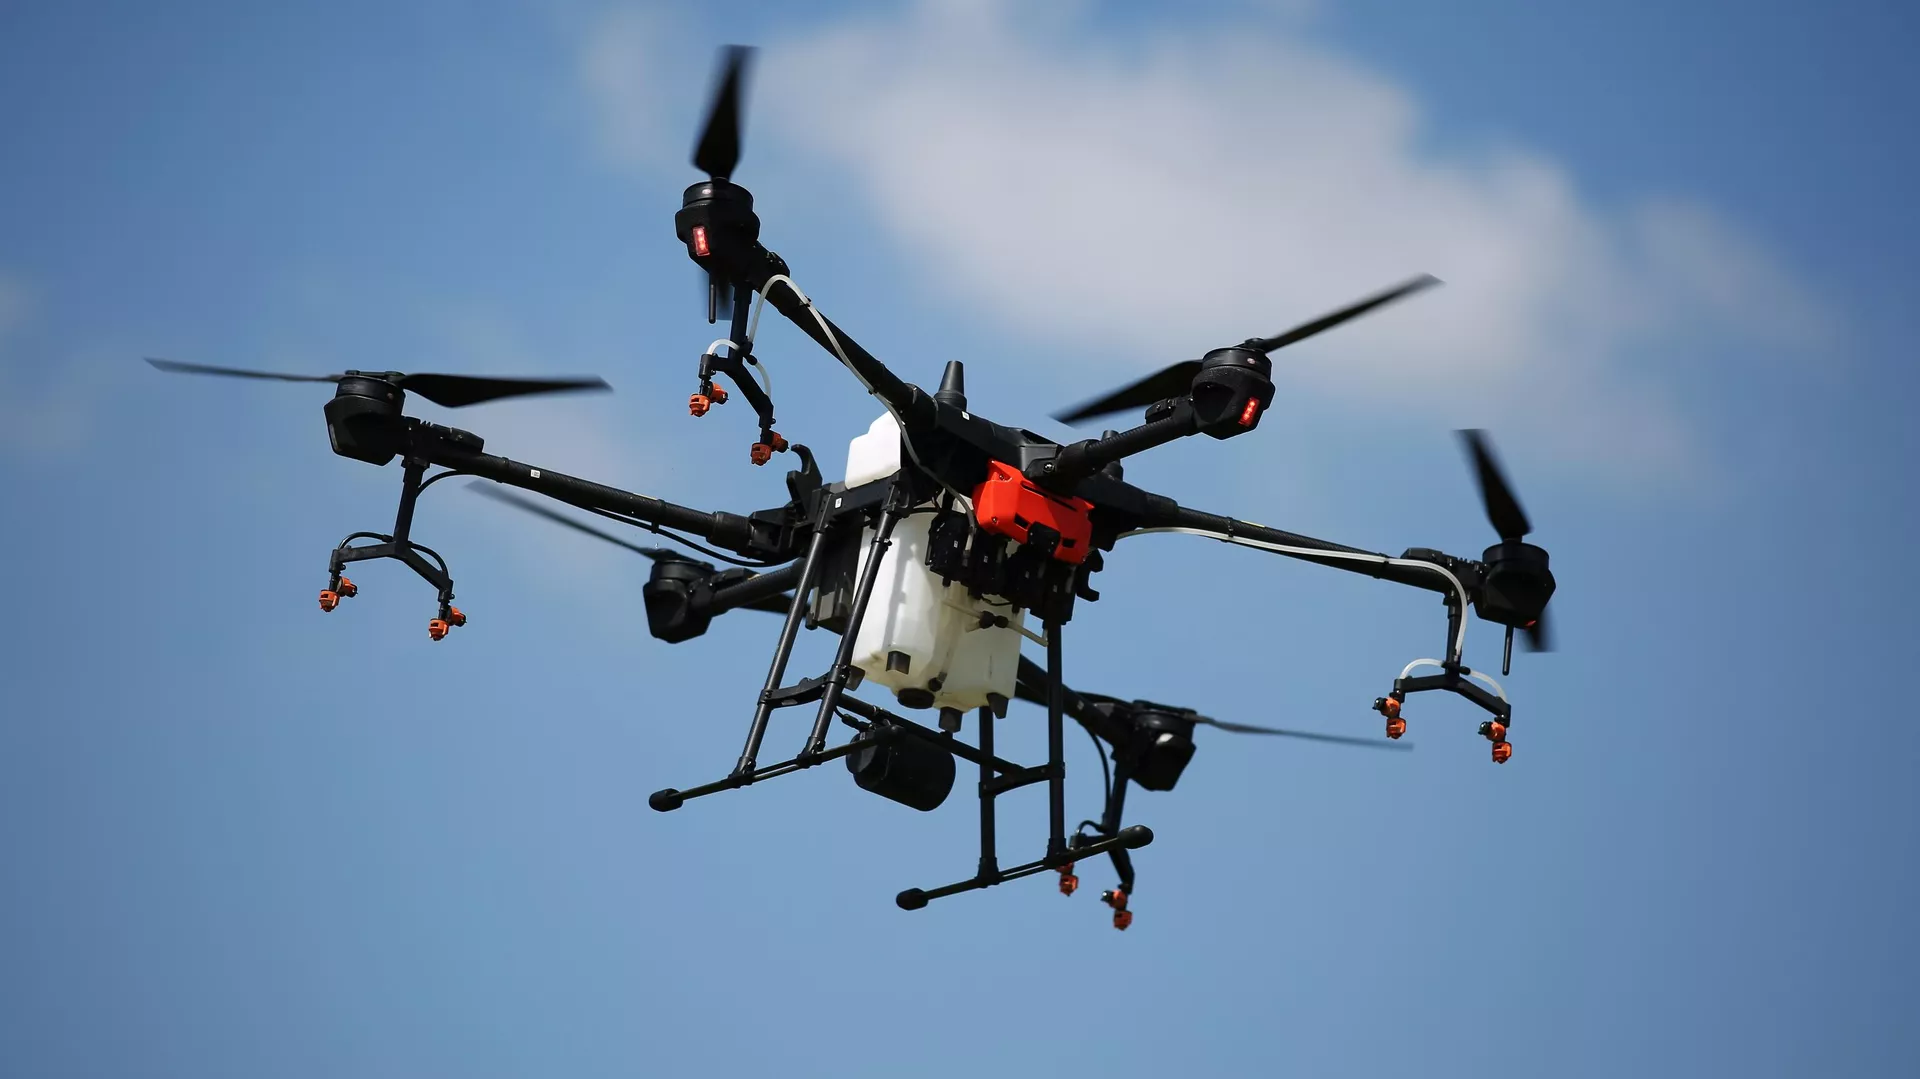 Юрист предупредил о штрафе за нелегальный запуск дрона во дворе дома